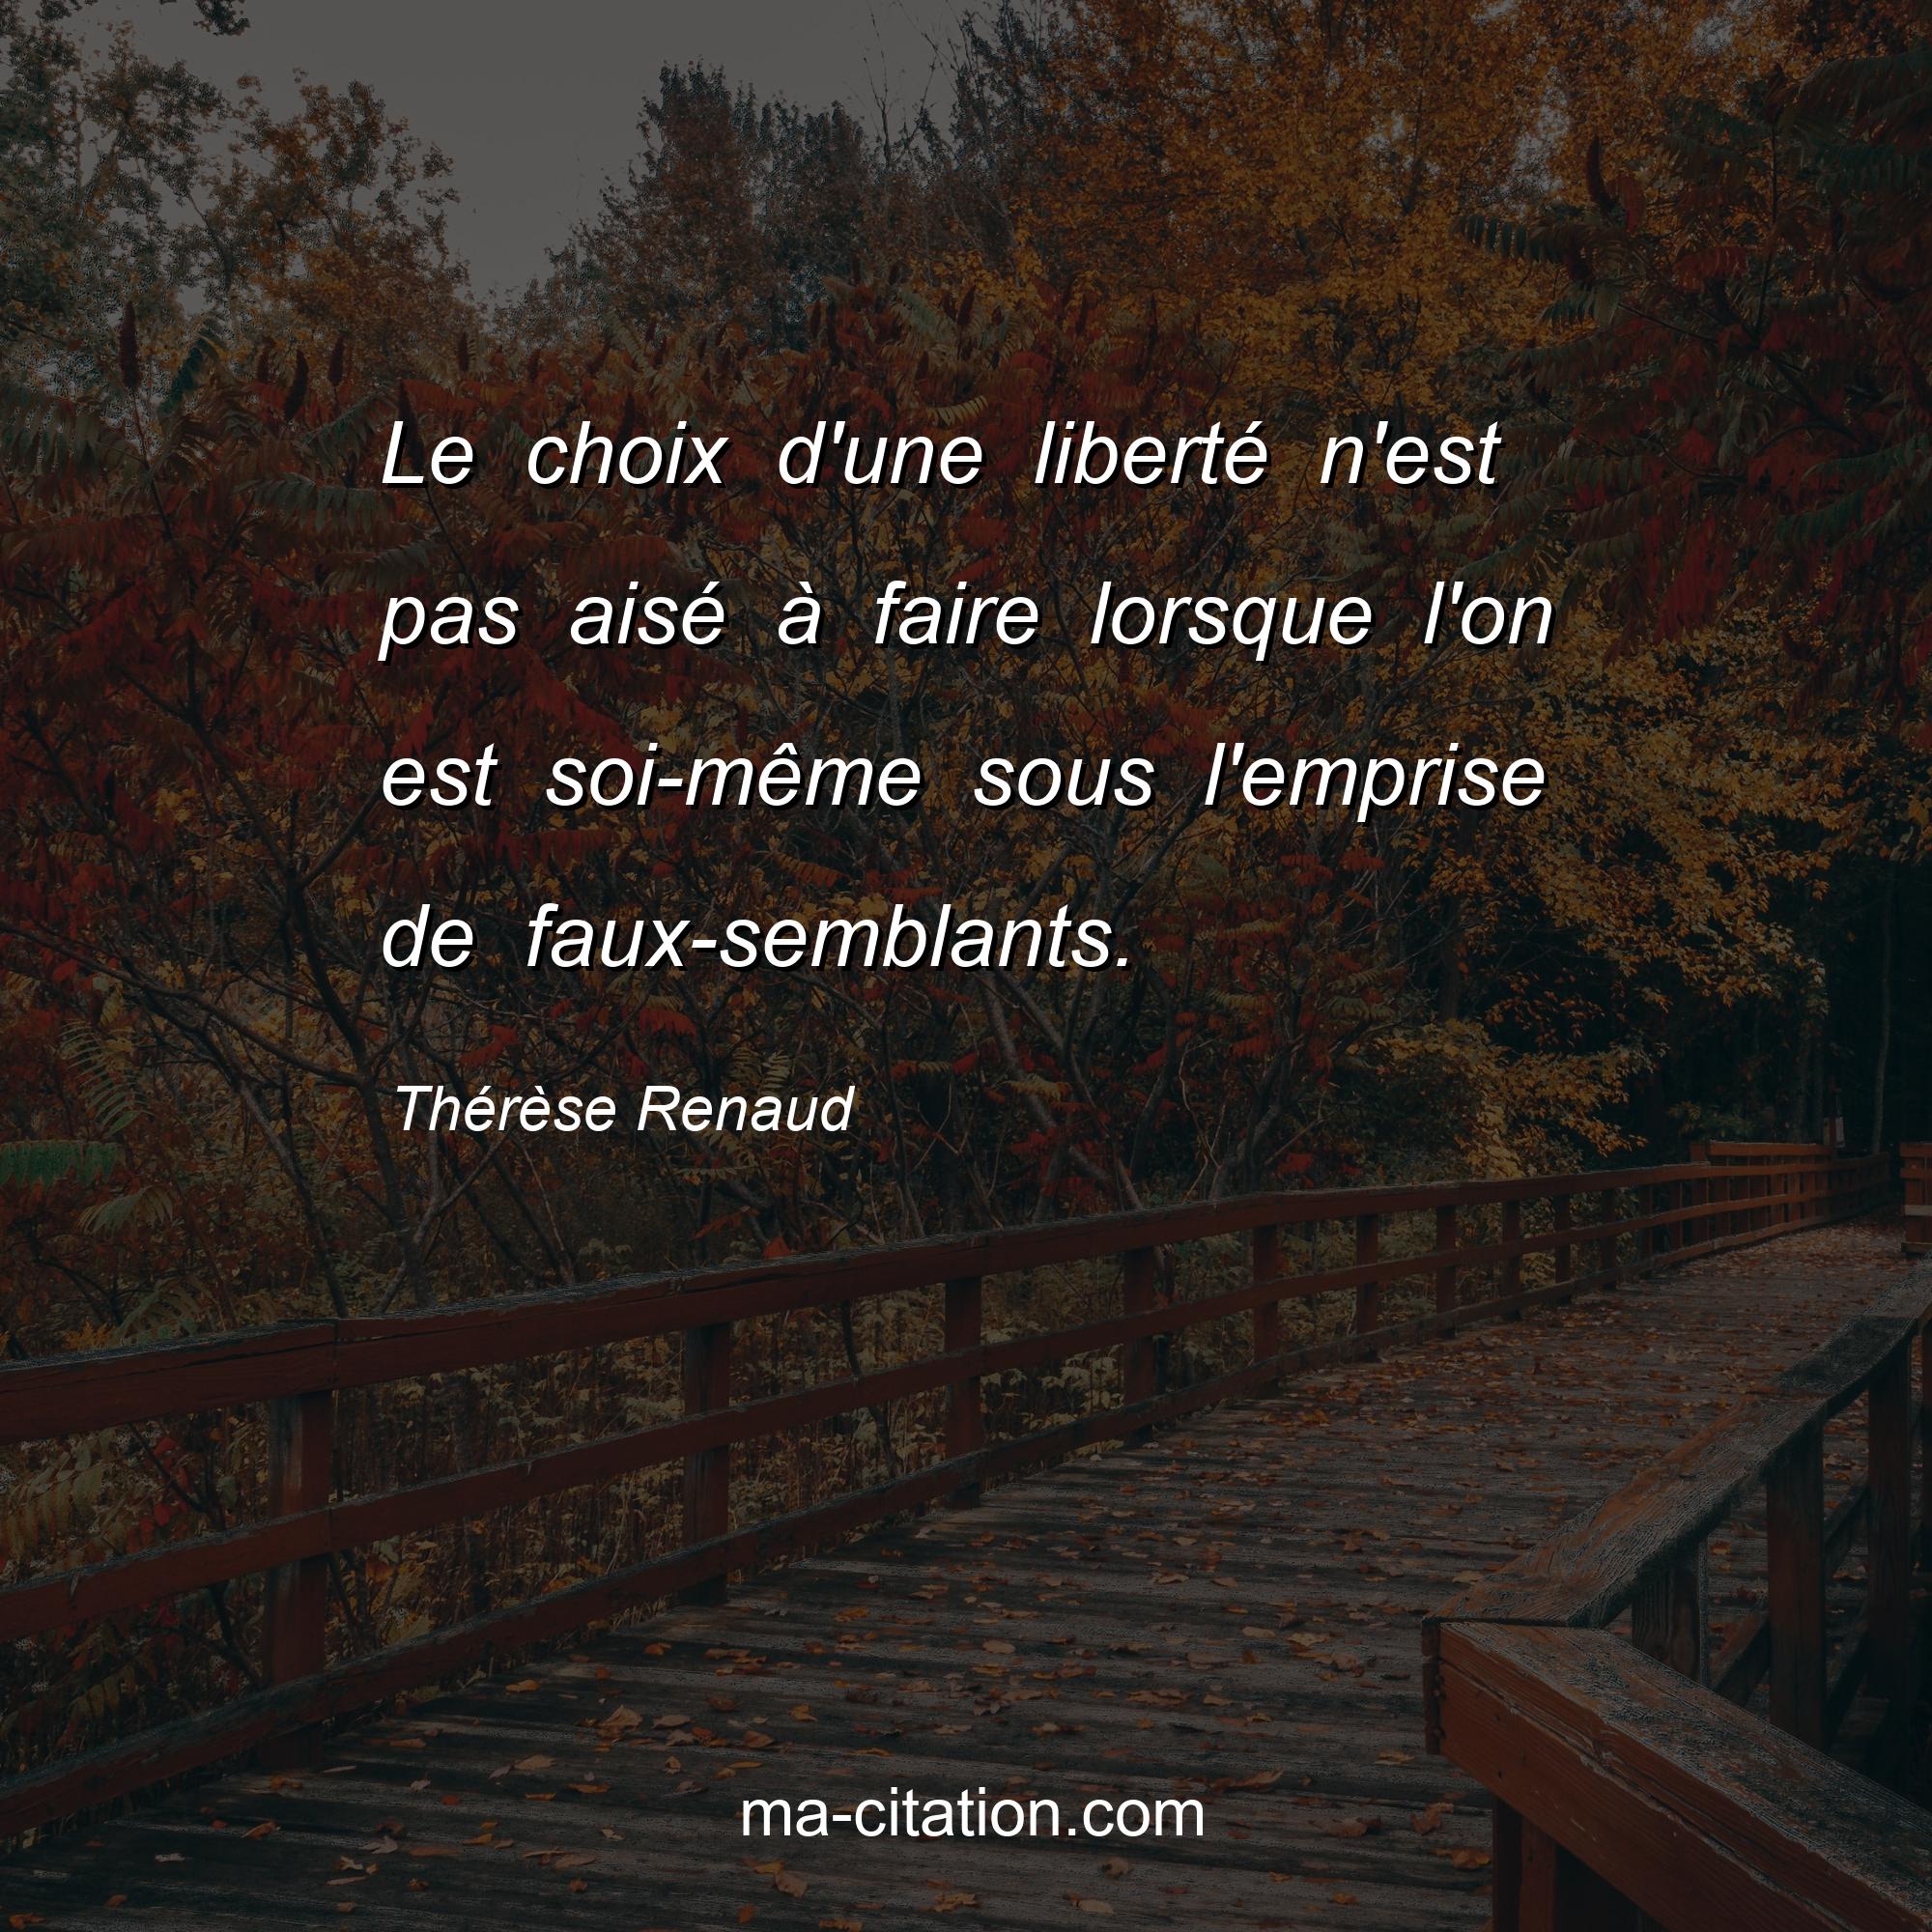 Thérèse Renaud : Le choix d'une liberté n'est pas aisé à faire lorsque l'on est soi-même sous l'emprise de faux-semblants.